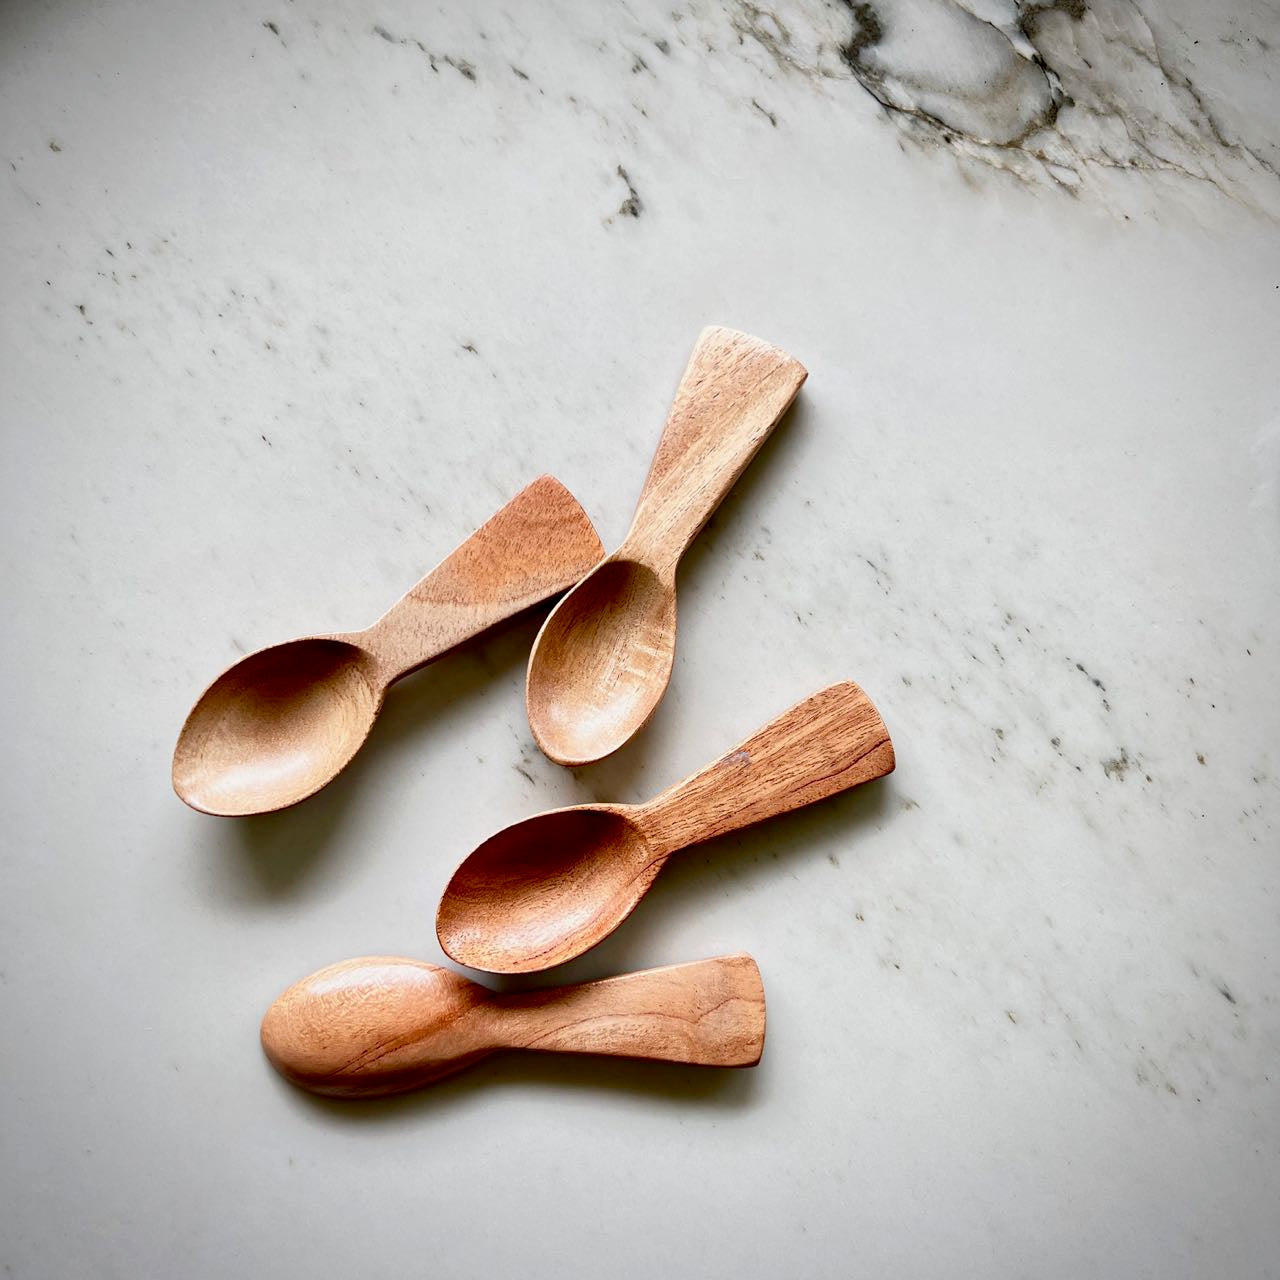 Tiny Neem Scoops & Spoons